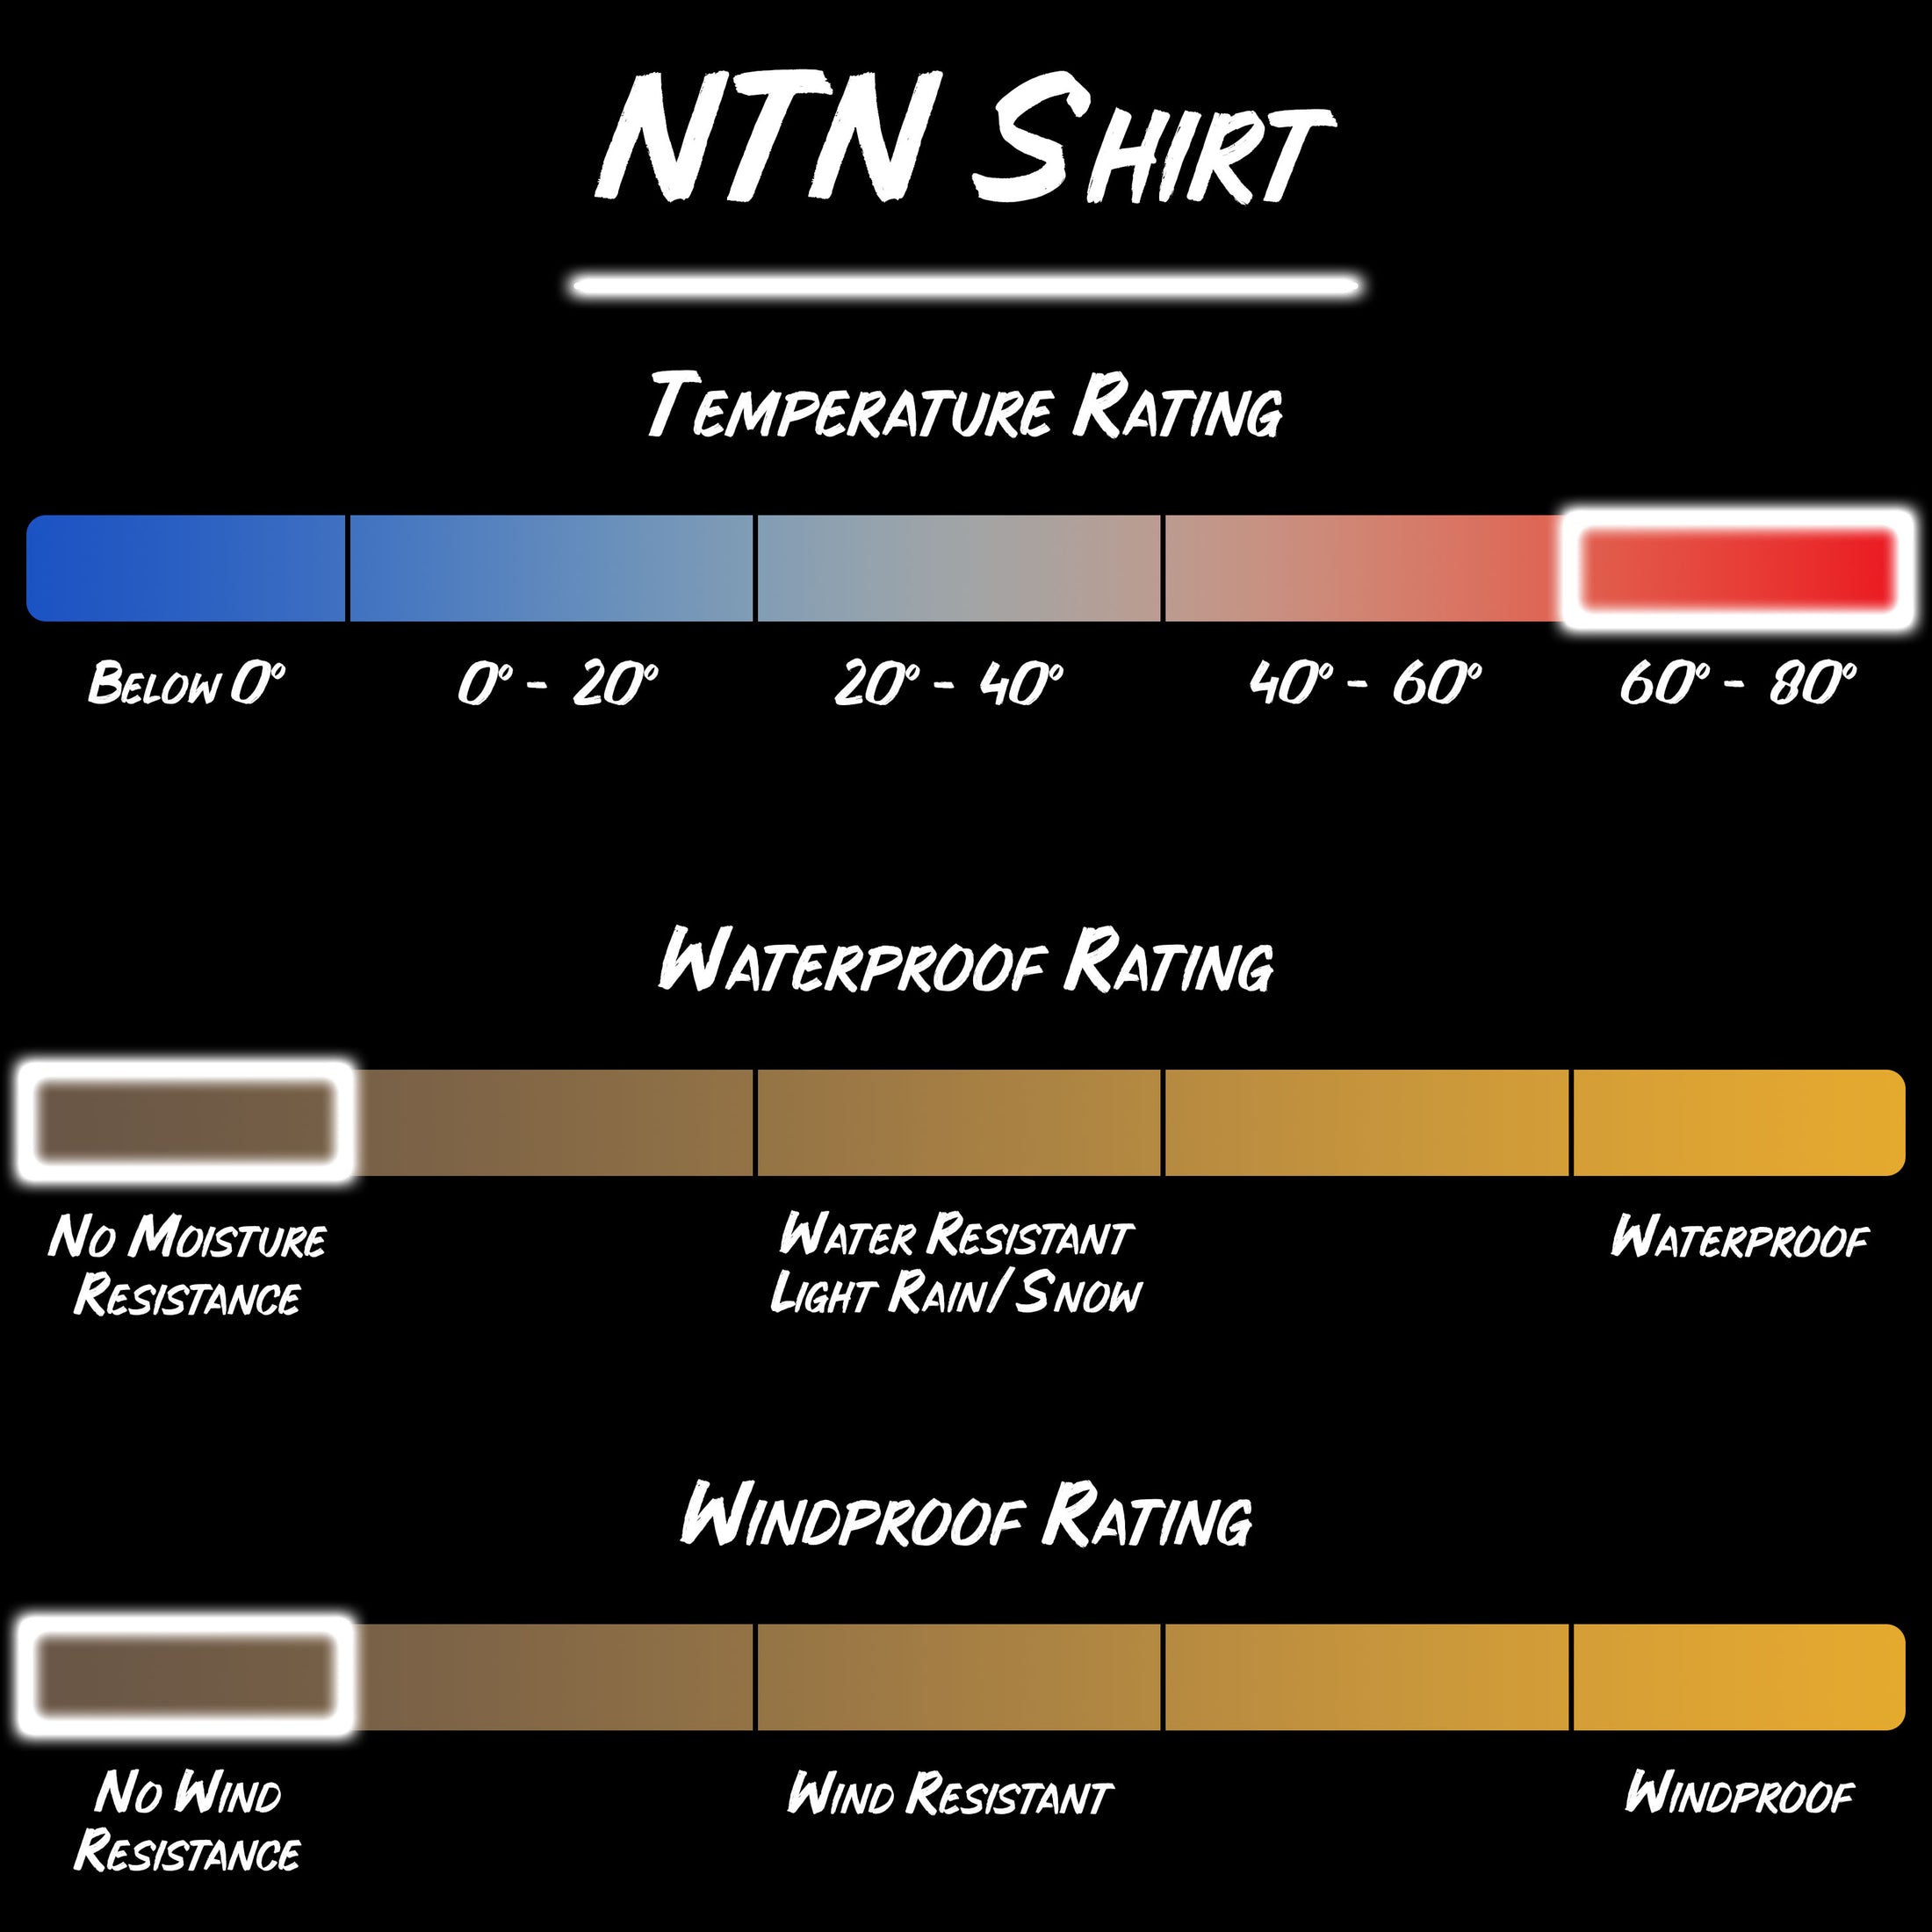 Gamekeeper field wear NTN long sleeve shirt product specifications